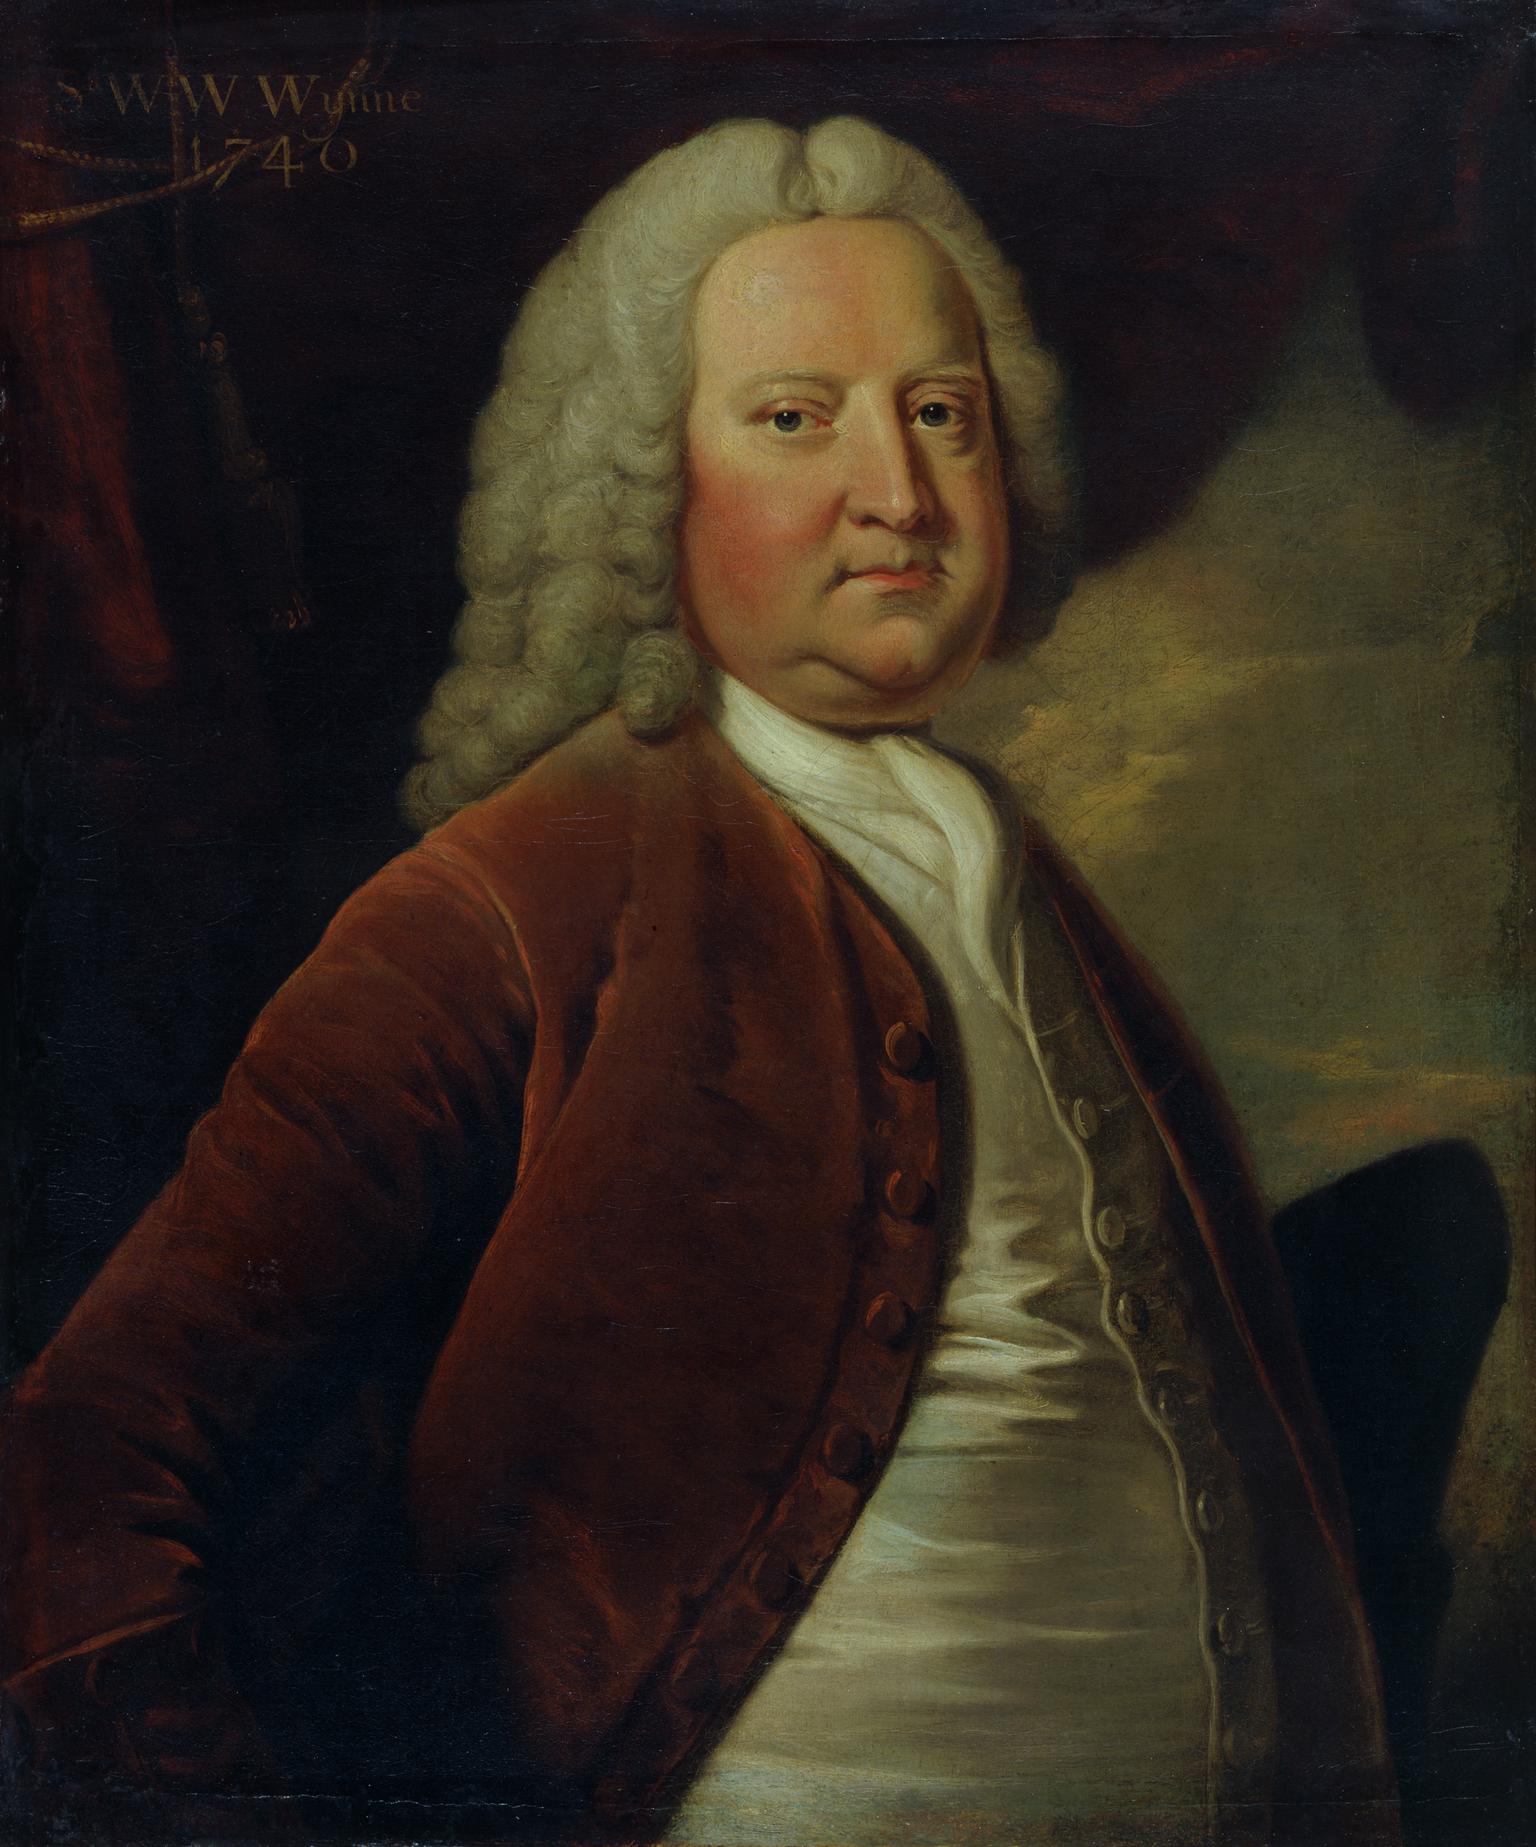 Sir Watkin Williams Wynn (1693-1749)